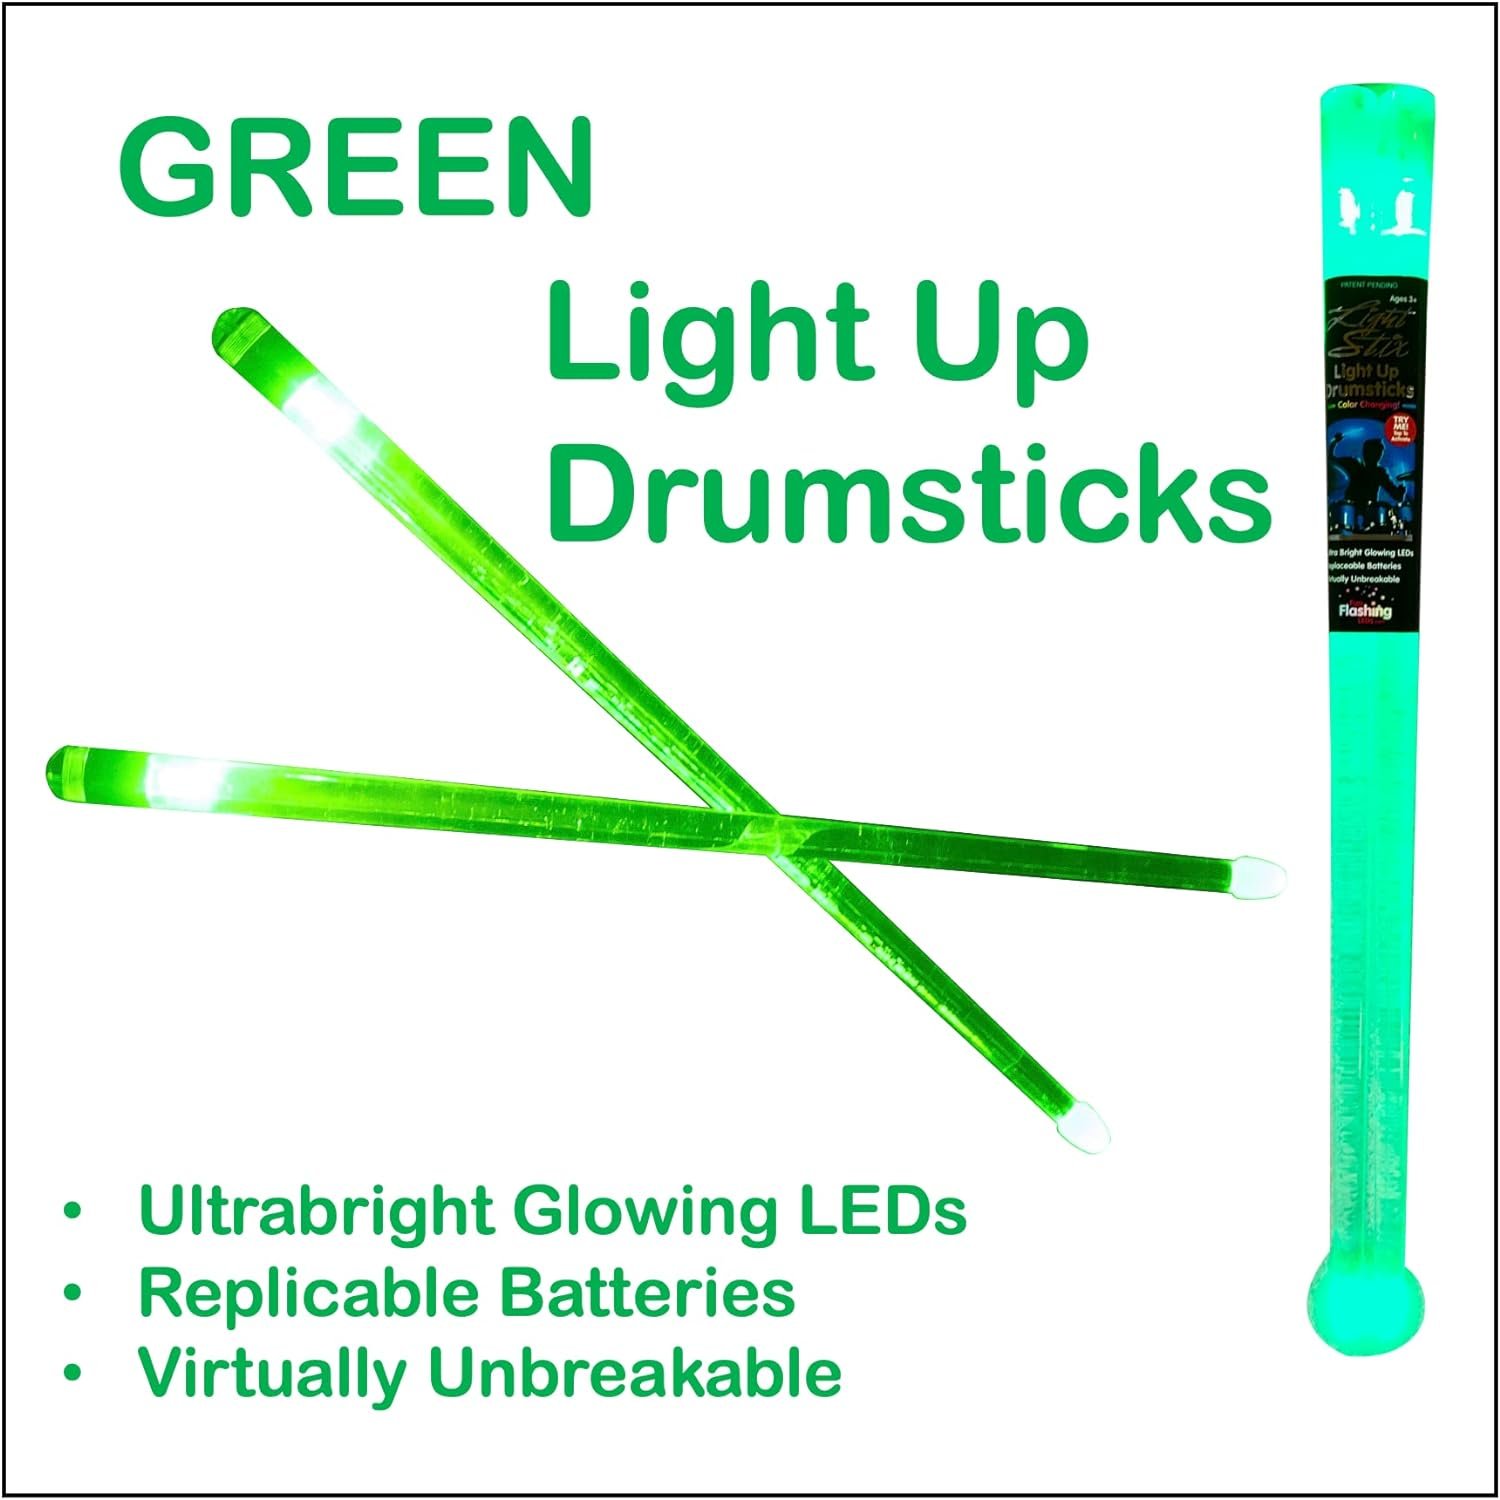 Light Stix LED Light Up Drumsticks (Color Change)| Changes Color Every Beat!